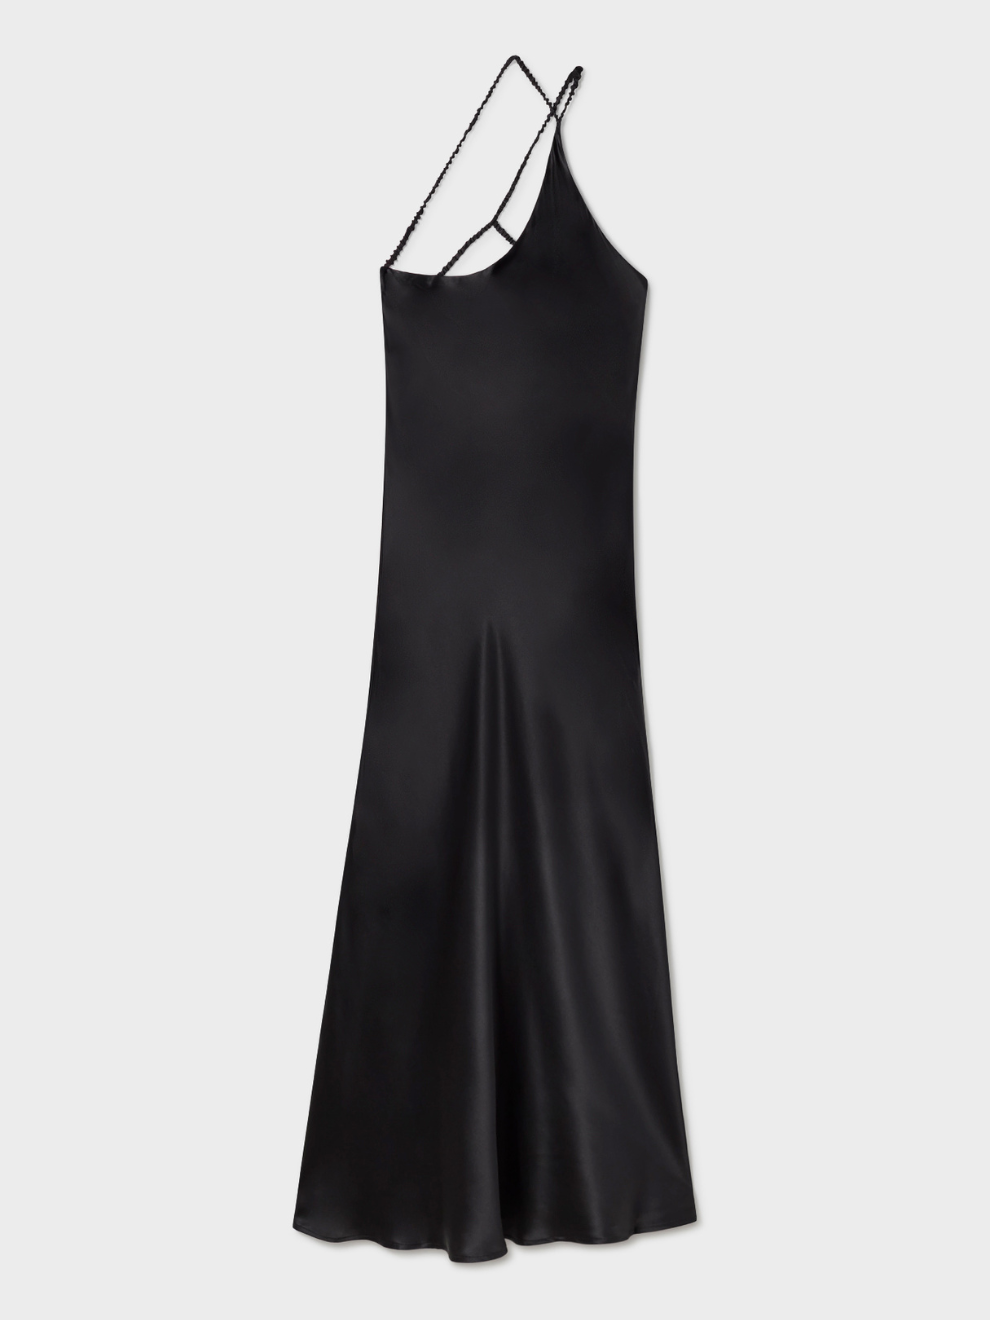 Slope Dress in Black